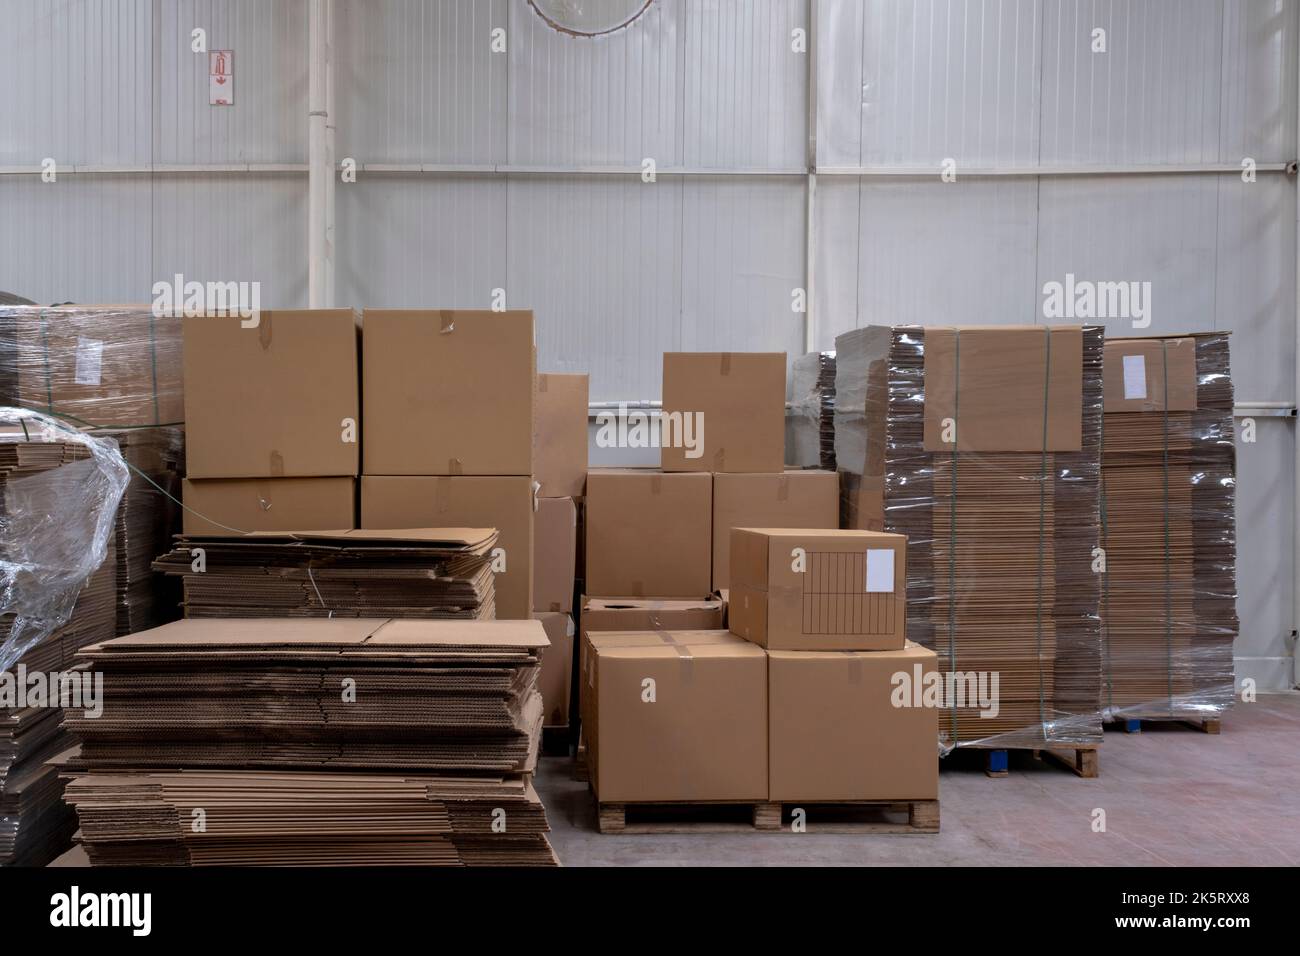 Großes Einzelhandelslager Mit Waren In Kartons Und Paketen. Logistik-, Sortier- und Distributionsanlage für mehr Produktlieferung. Vorderansicht Stockfoto